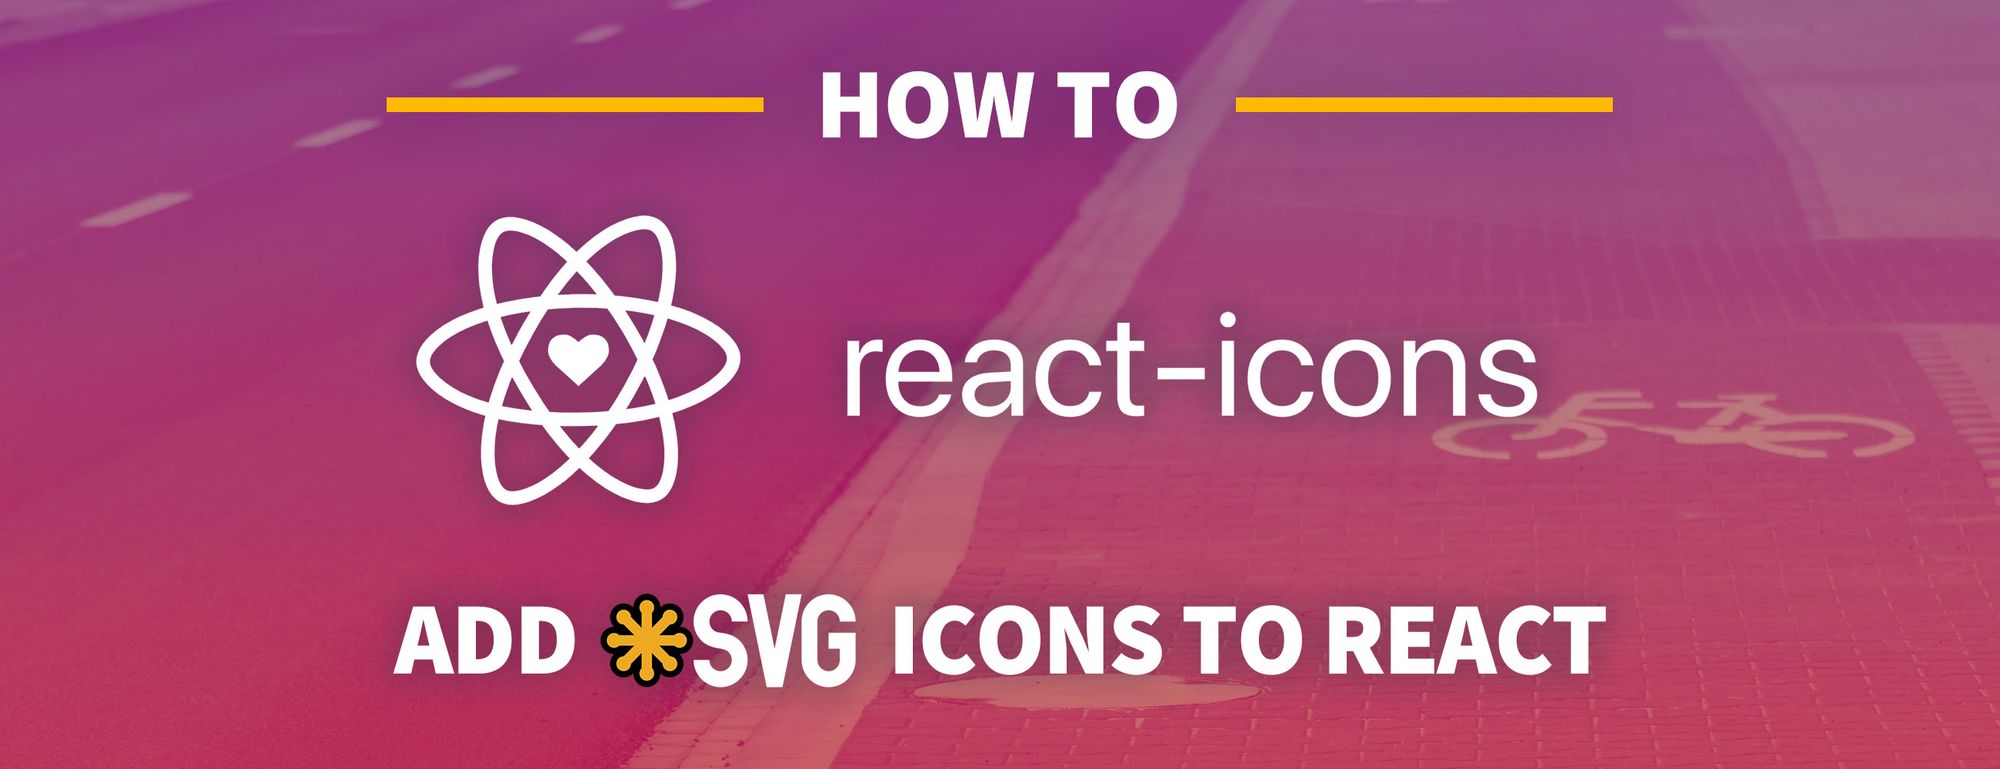 React Icons with SVG Icons - React Icons with SVG Icons cung cấp một bộ sưu tập các biểu tượng được tối ưu hóa để sử dụng trên trang web hoặc các ứng dụng. Nhờ sử dụng định dạng SVG, bạn có thể tận dụng các ưu điểm của nó như độ phân giải cao, sự linh hoạt, và kích thước file nhỏ. Hãy khám phá các biểu tượng tuyệt vời này và thêm chúng vào trang web của bạn.